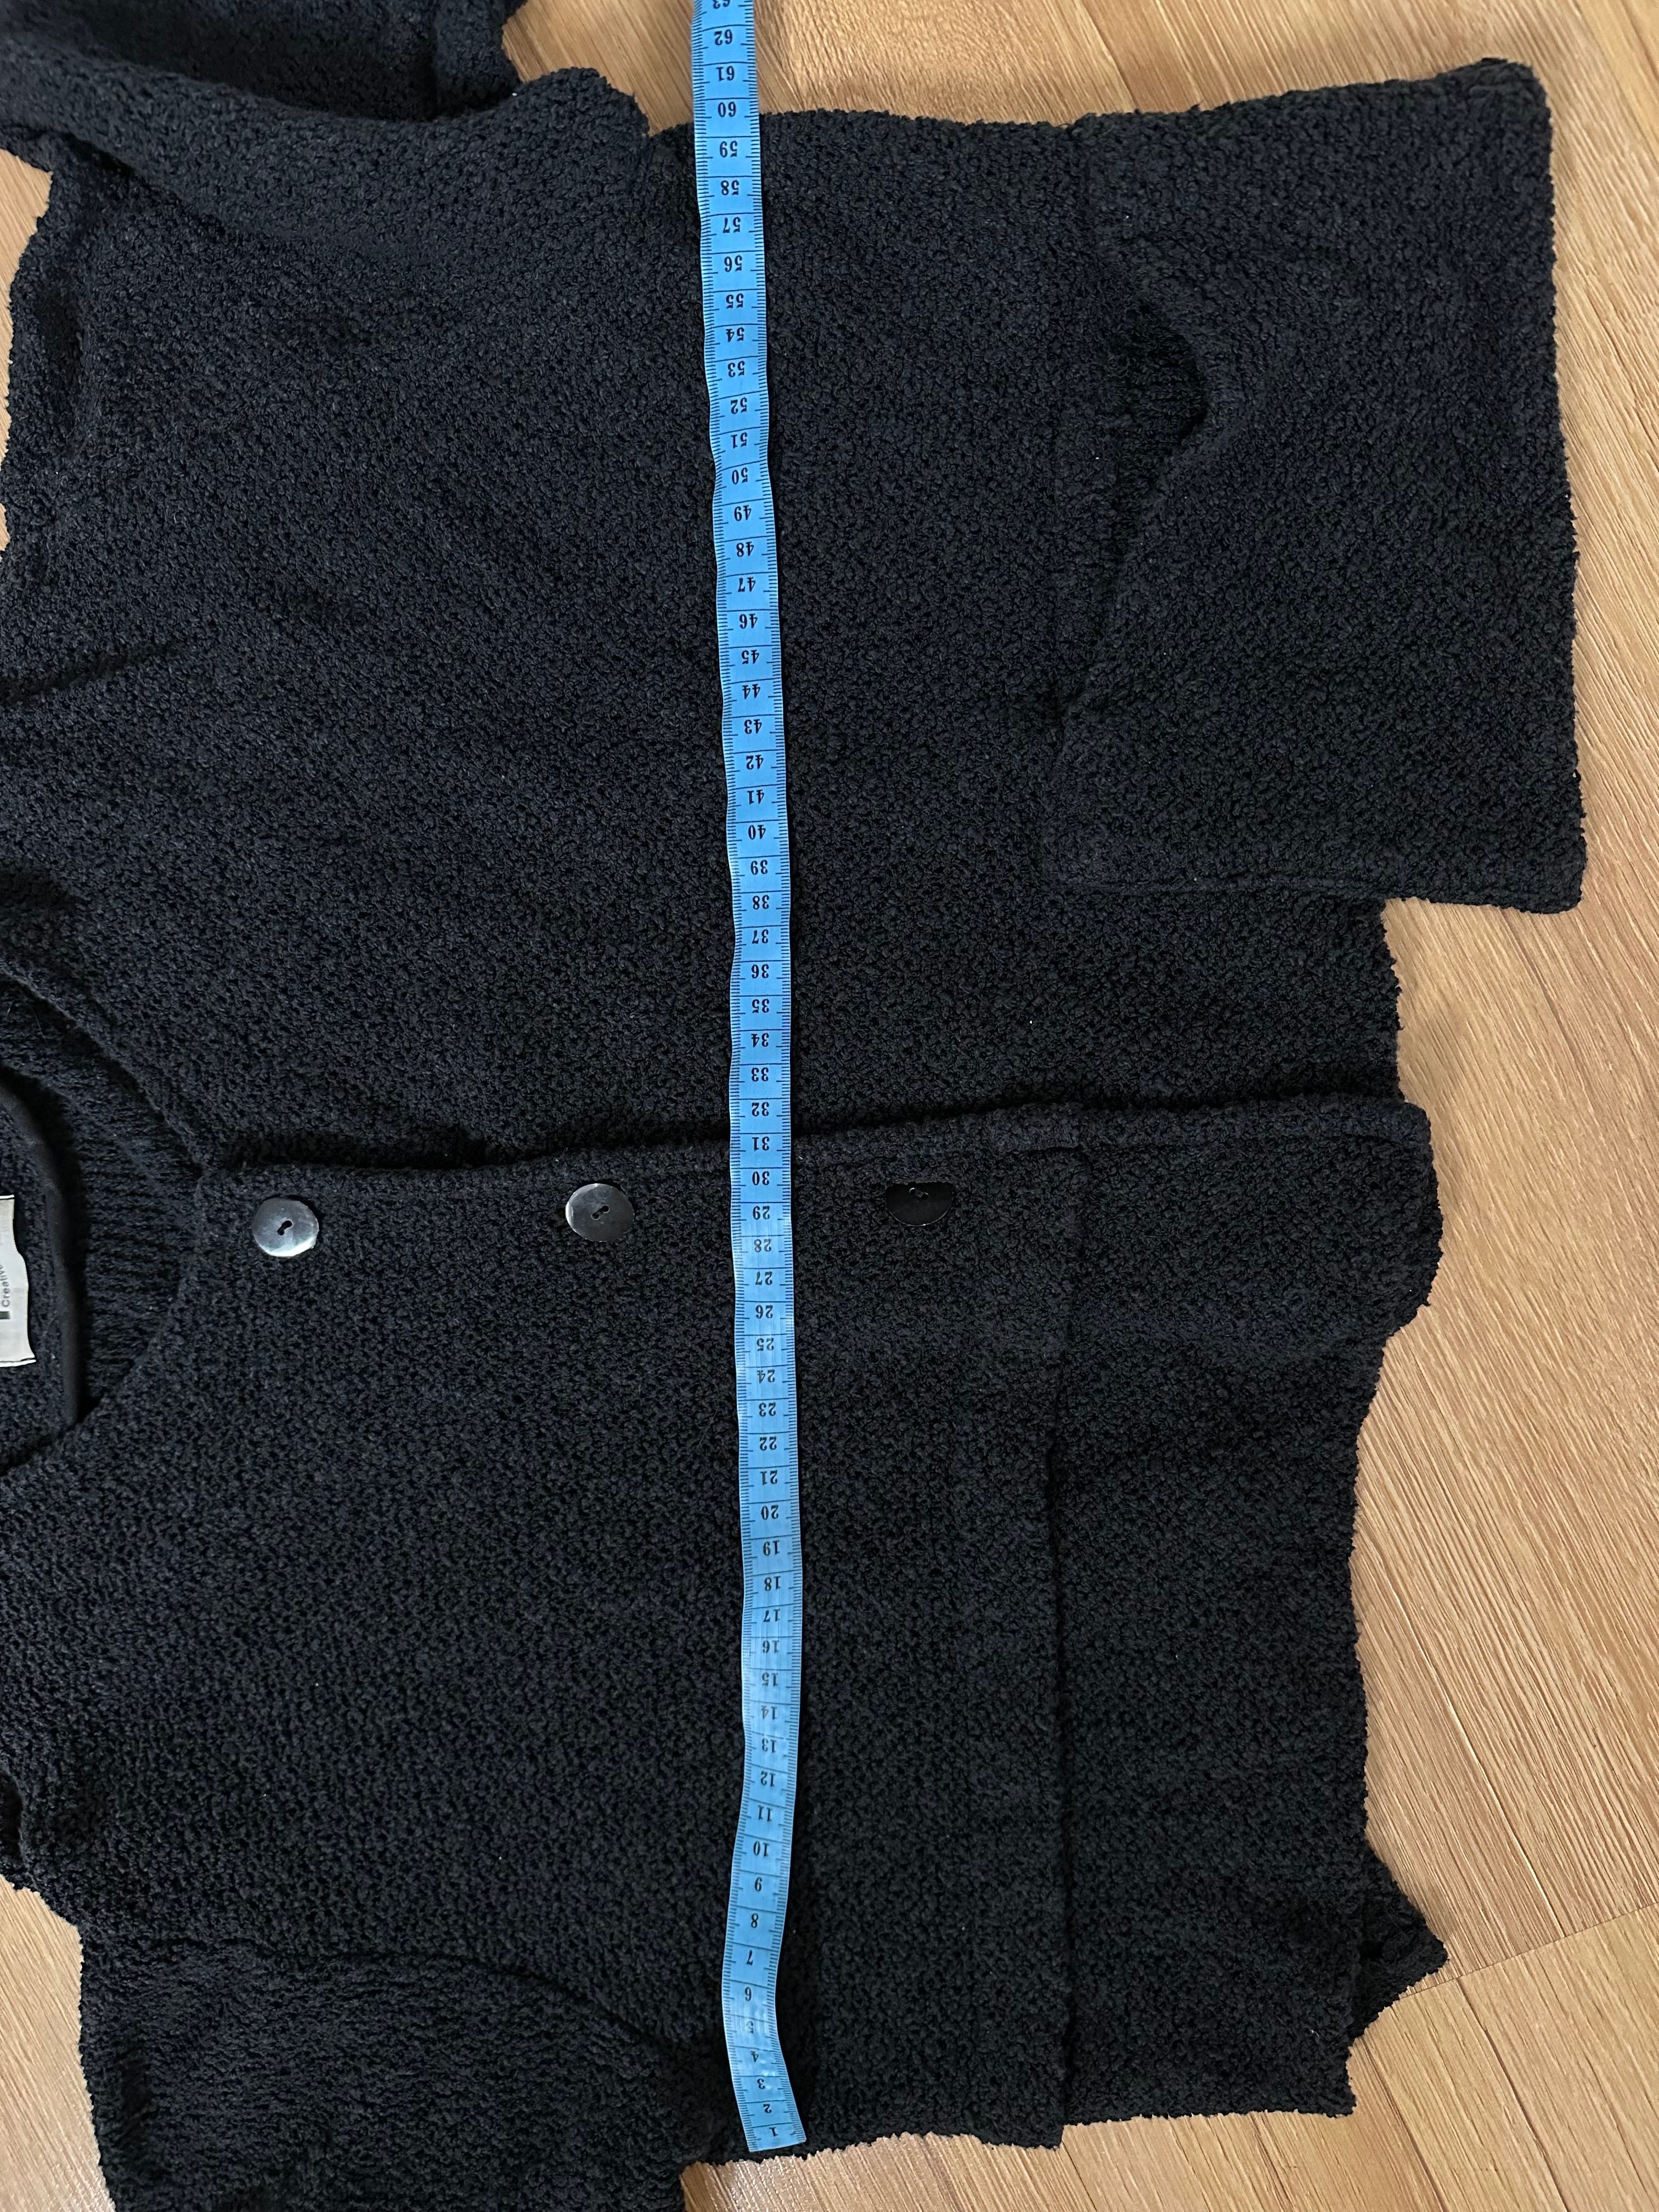 Krótki rozpinany sweterek Bolerko Gillian XL/XXL/XXXL